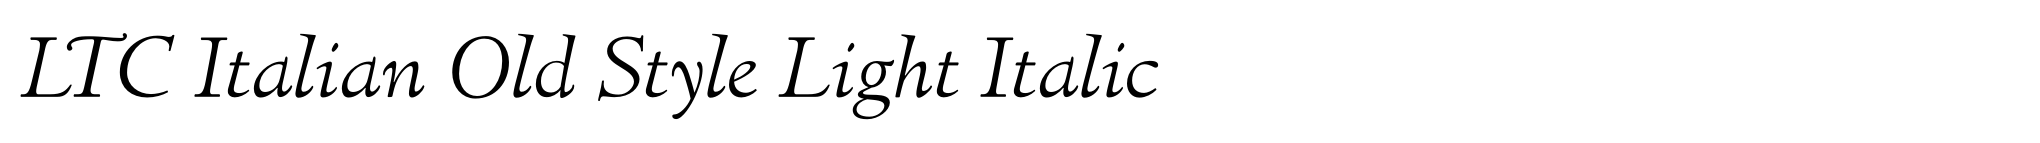 LTC Italian Old Style Light Italic image